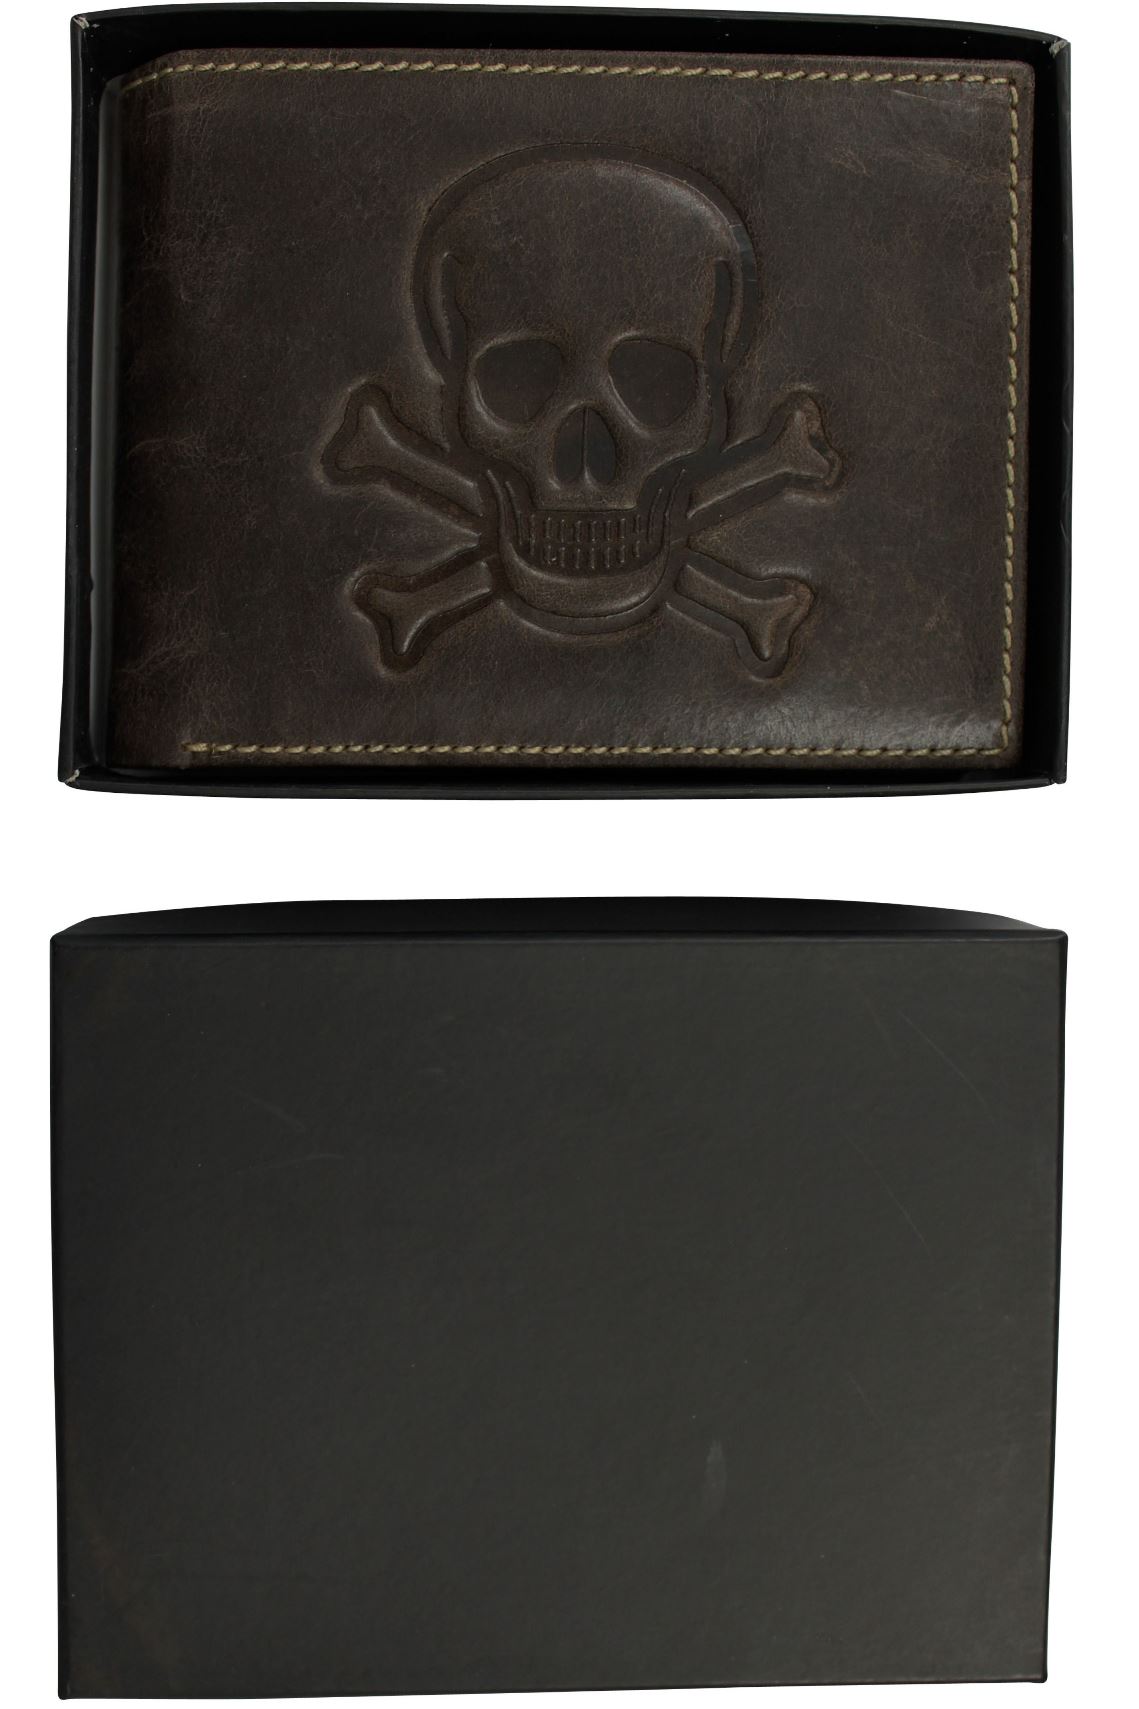 Mens Genuine Leather Wallet by Xact Clothing Embossed Skull & Cross Bones, 04, Xw-672, Vintage Brown